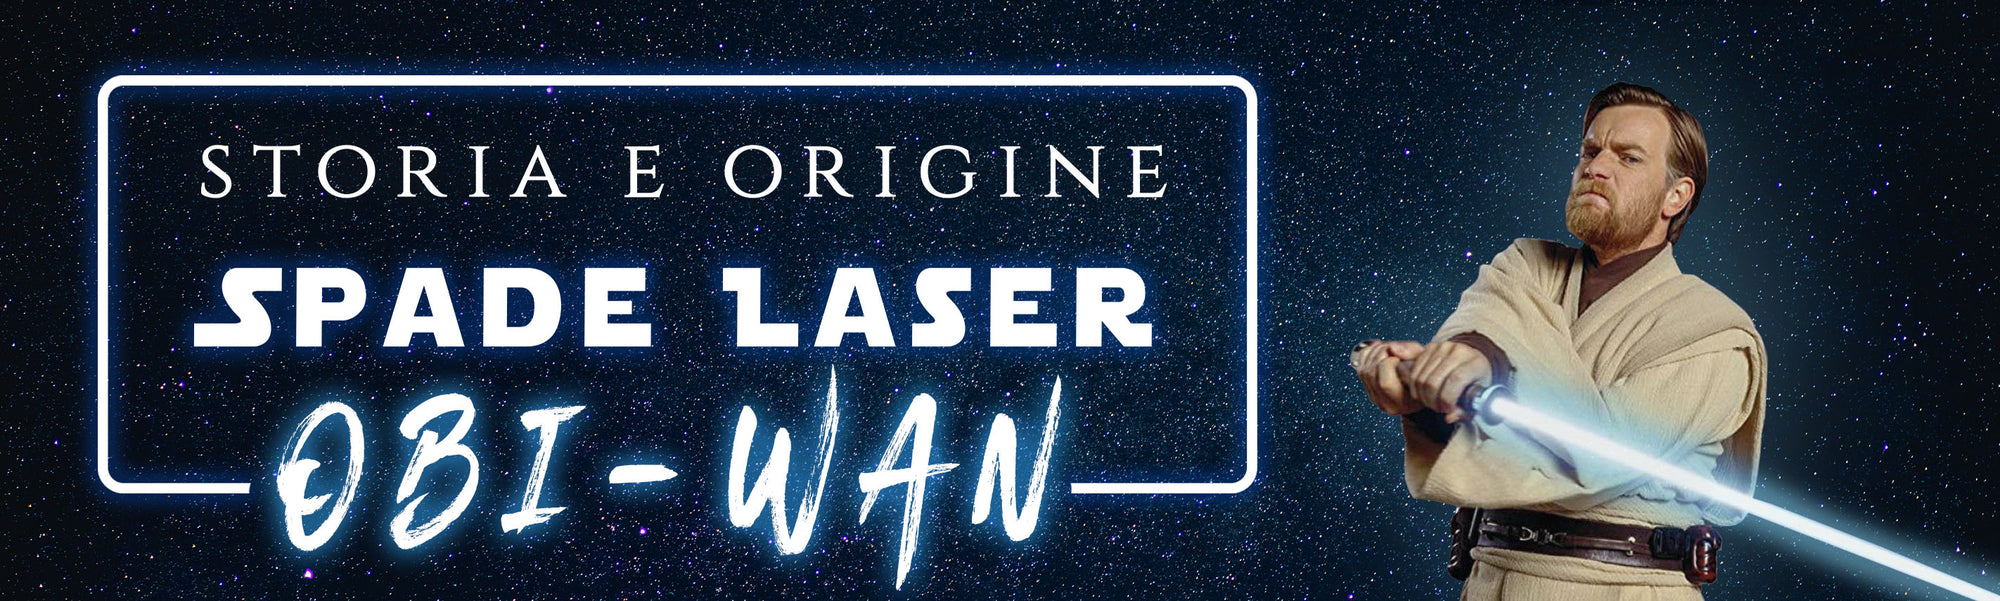 Spade Laser di Obi-Wan Kenobi